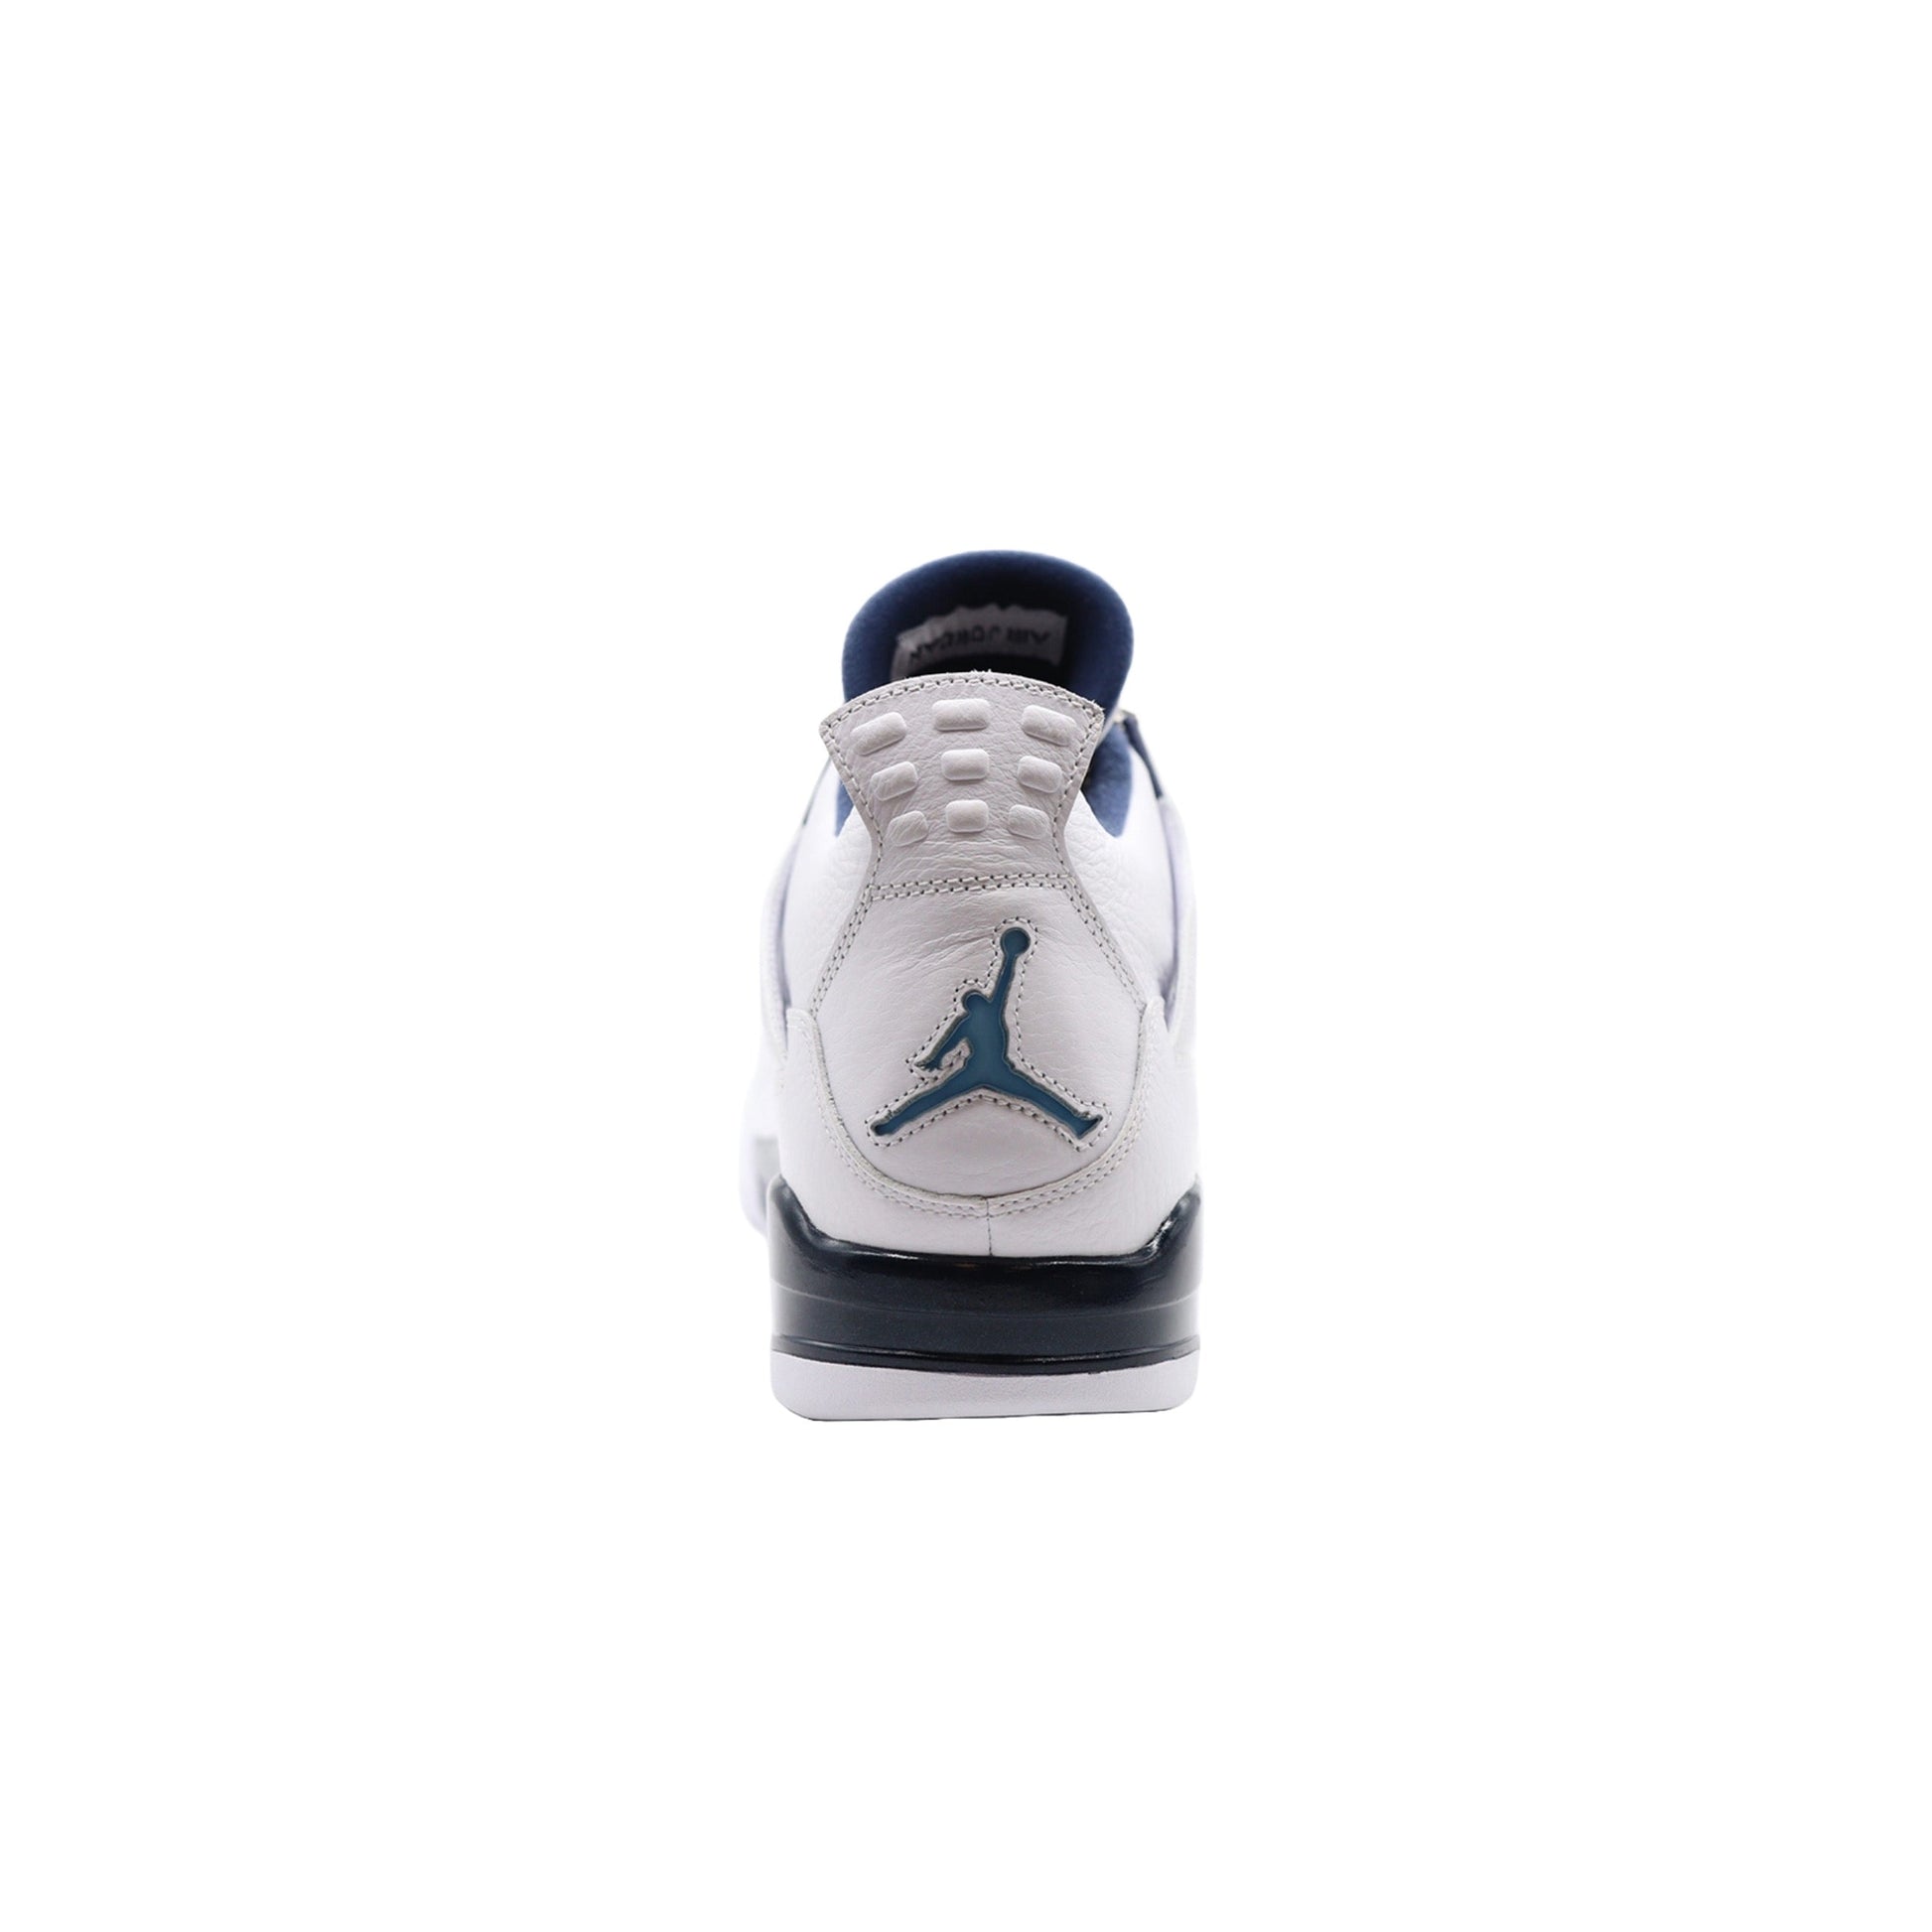 Air Jordan 4, LS Legend Blue (2015)